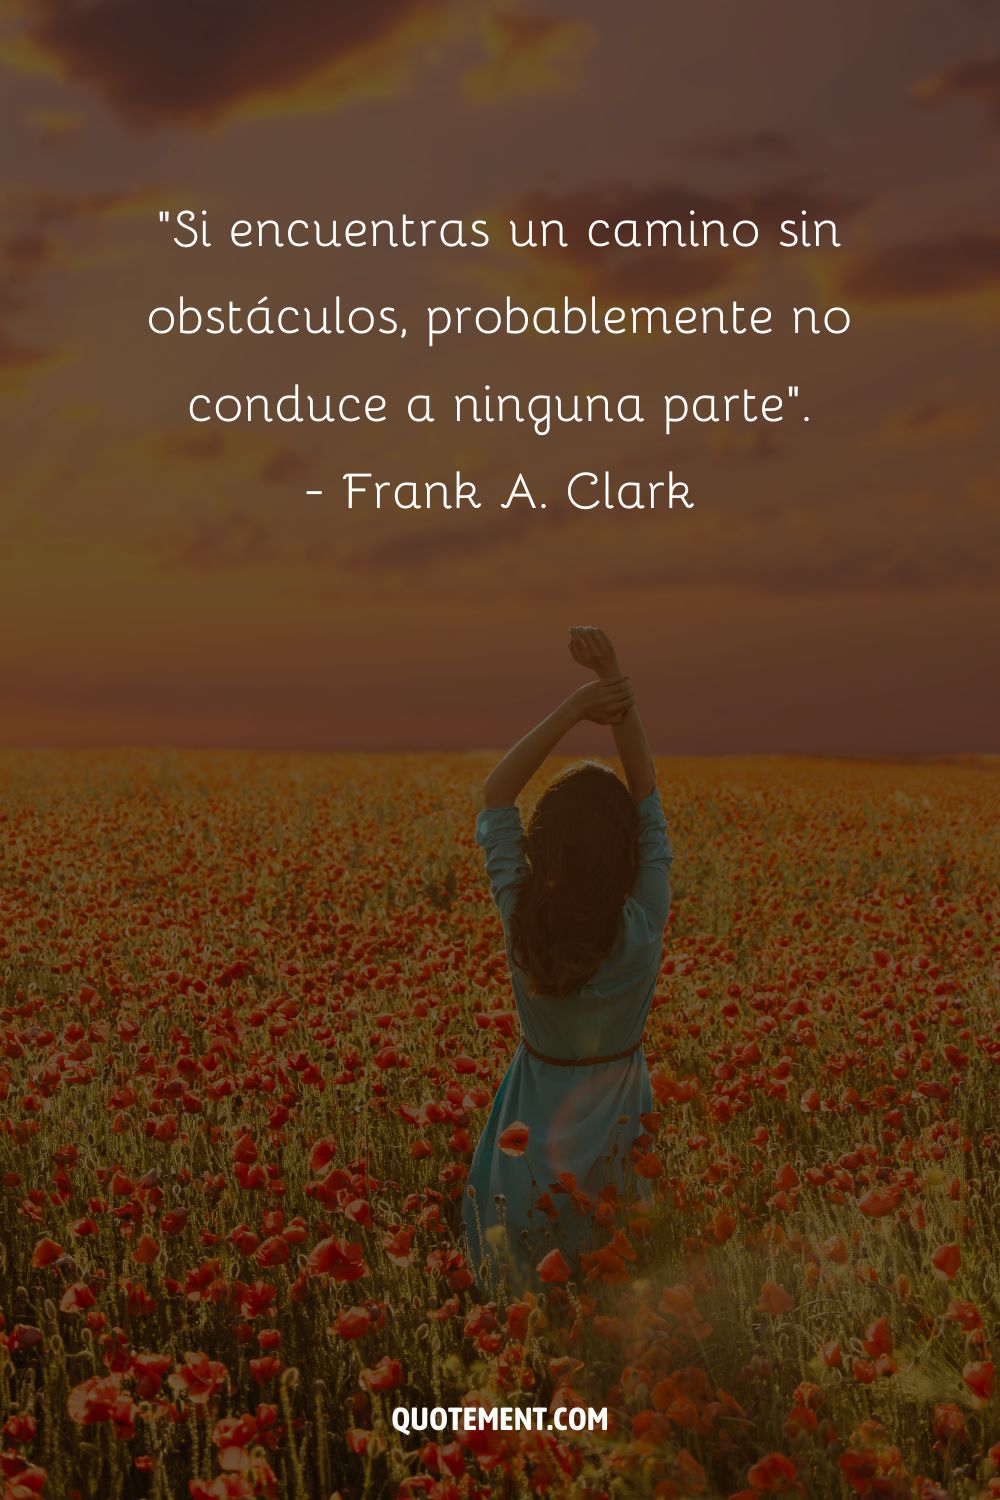 "Si encuentras un camino sin obstáculos, probablemente no conduce a ninguna parte". - Frank A. Clark